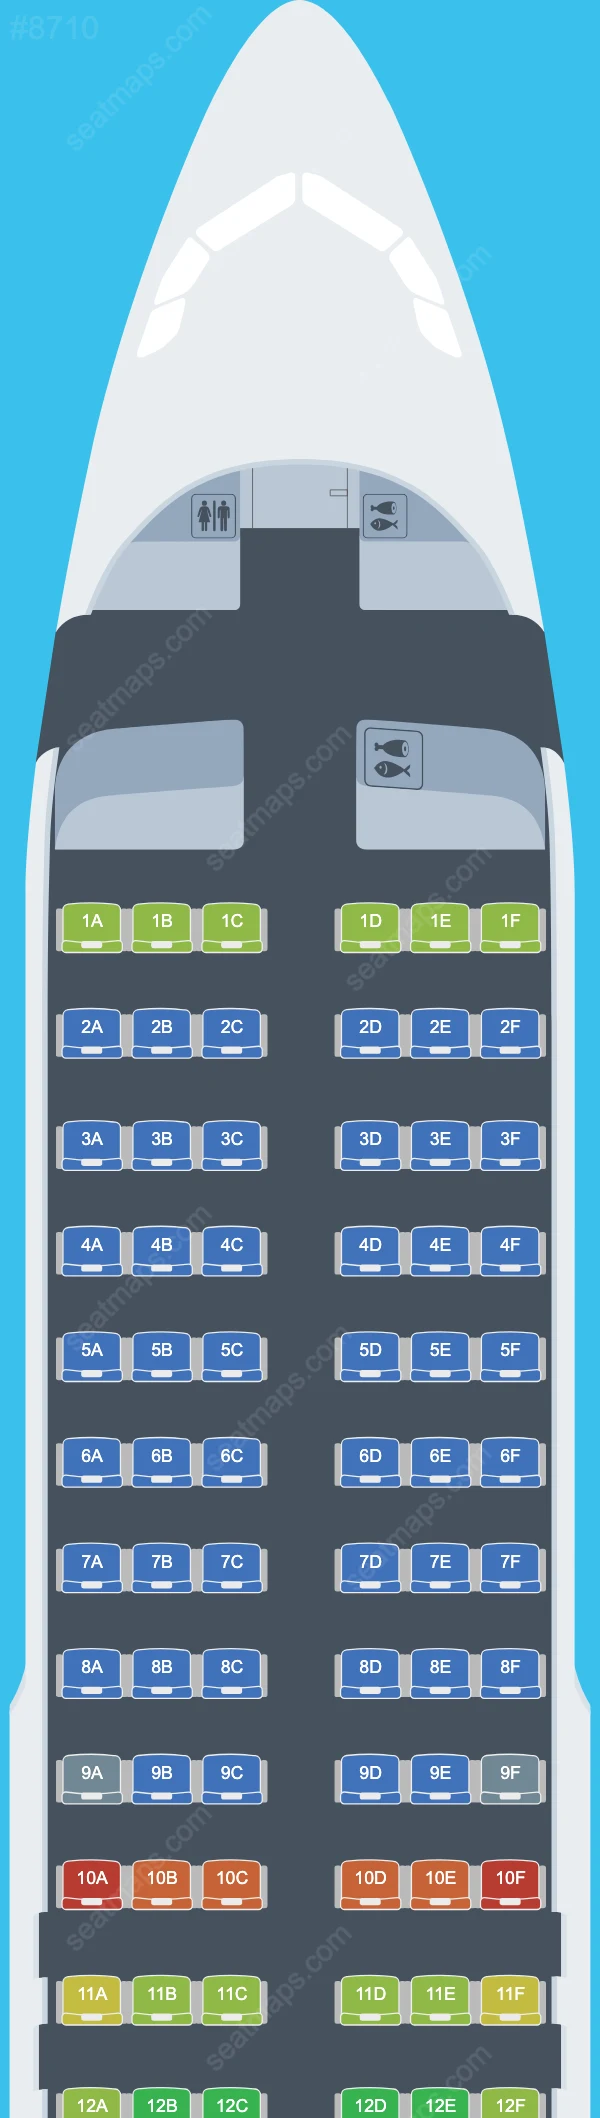 SAS Airbus A320 Plan de Salle A320-200neo